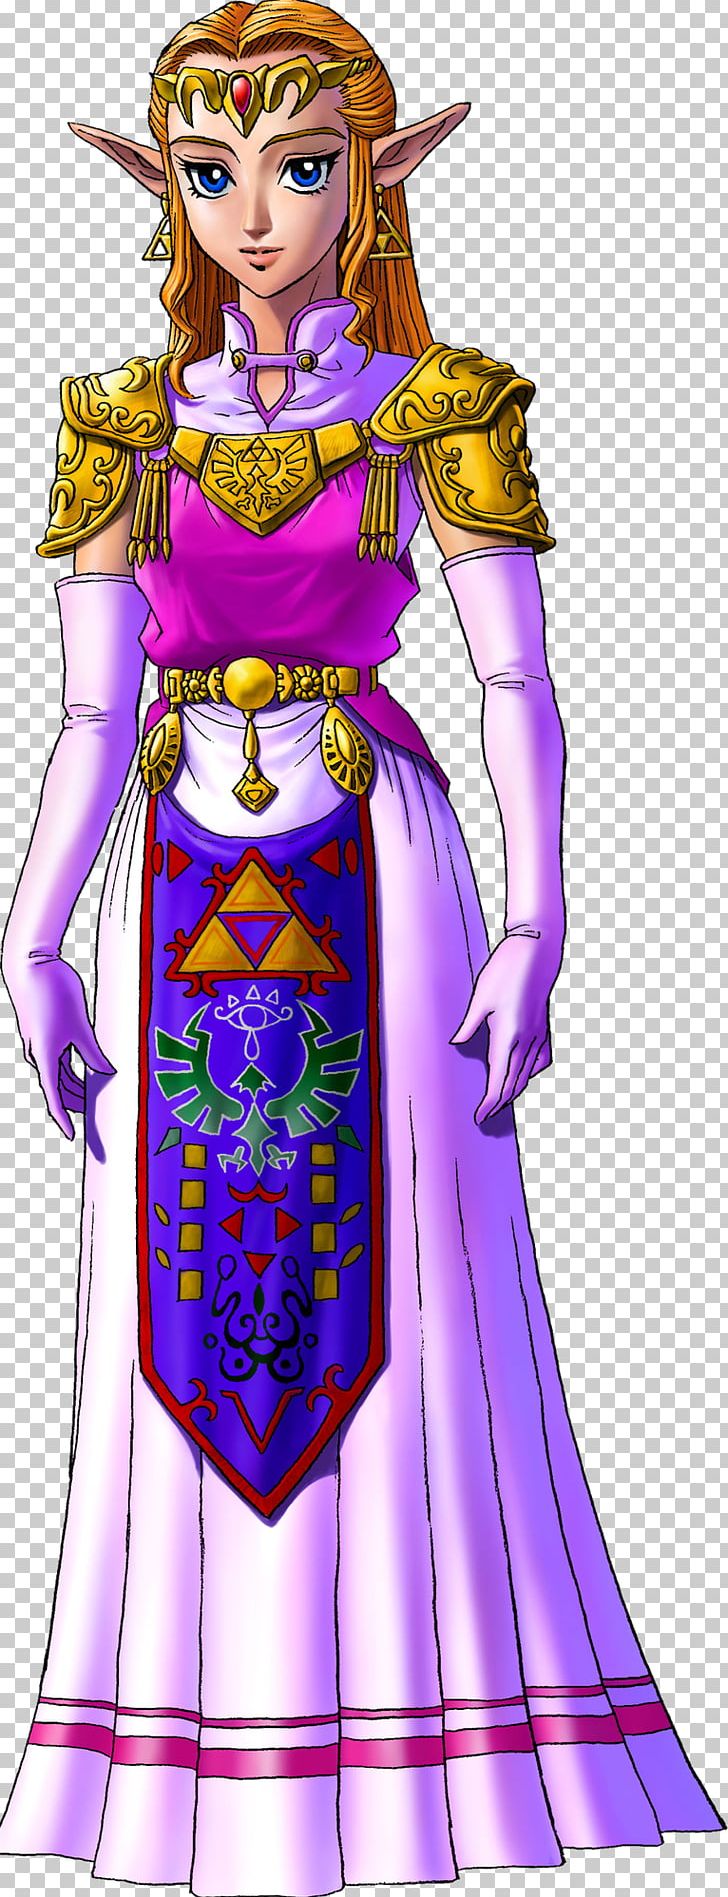 The Legend Of Zelda: Ocarina Of Time 3D The Legend Of Zelda: Majora's Mask Princess Zelda Link PNG, Clipart,  Free PNG Download